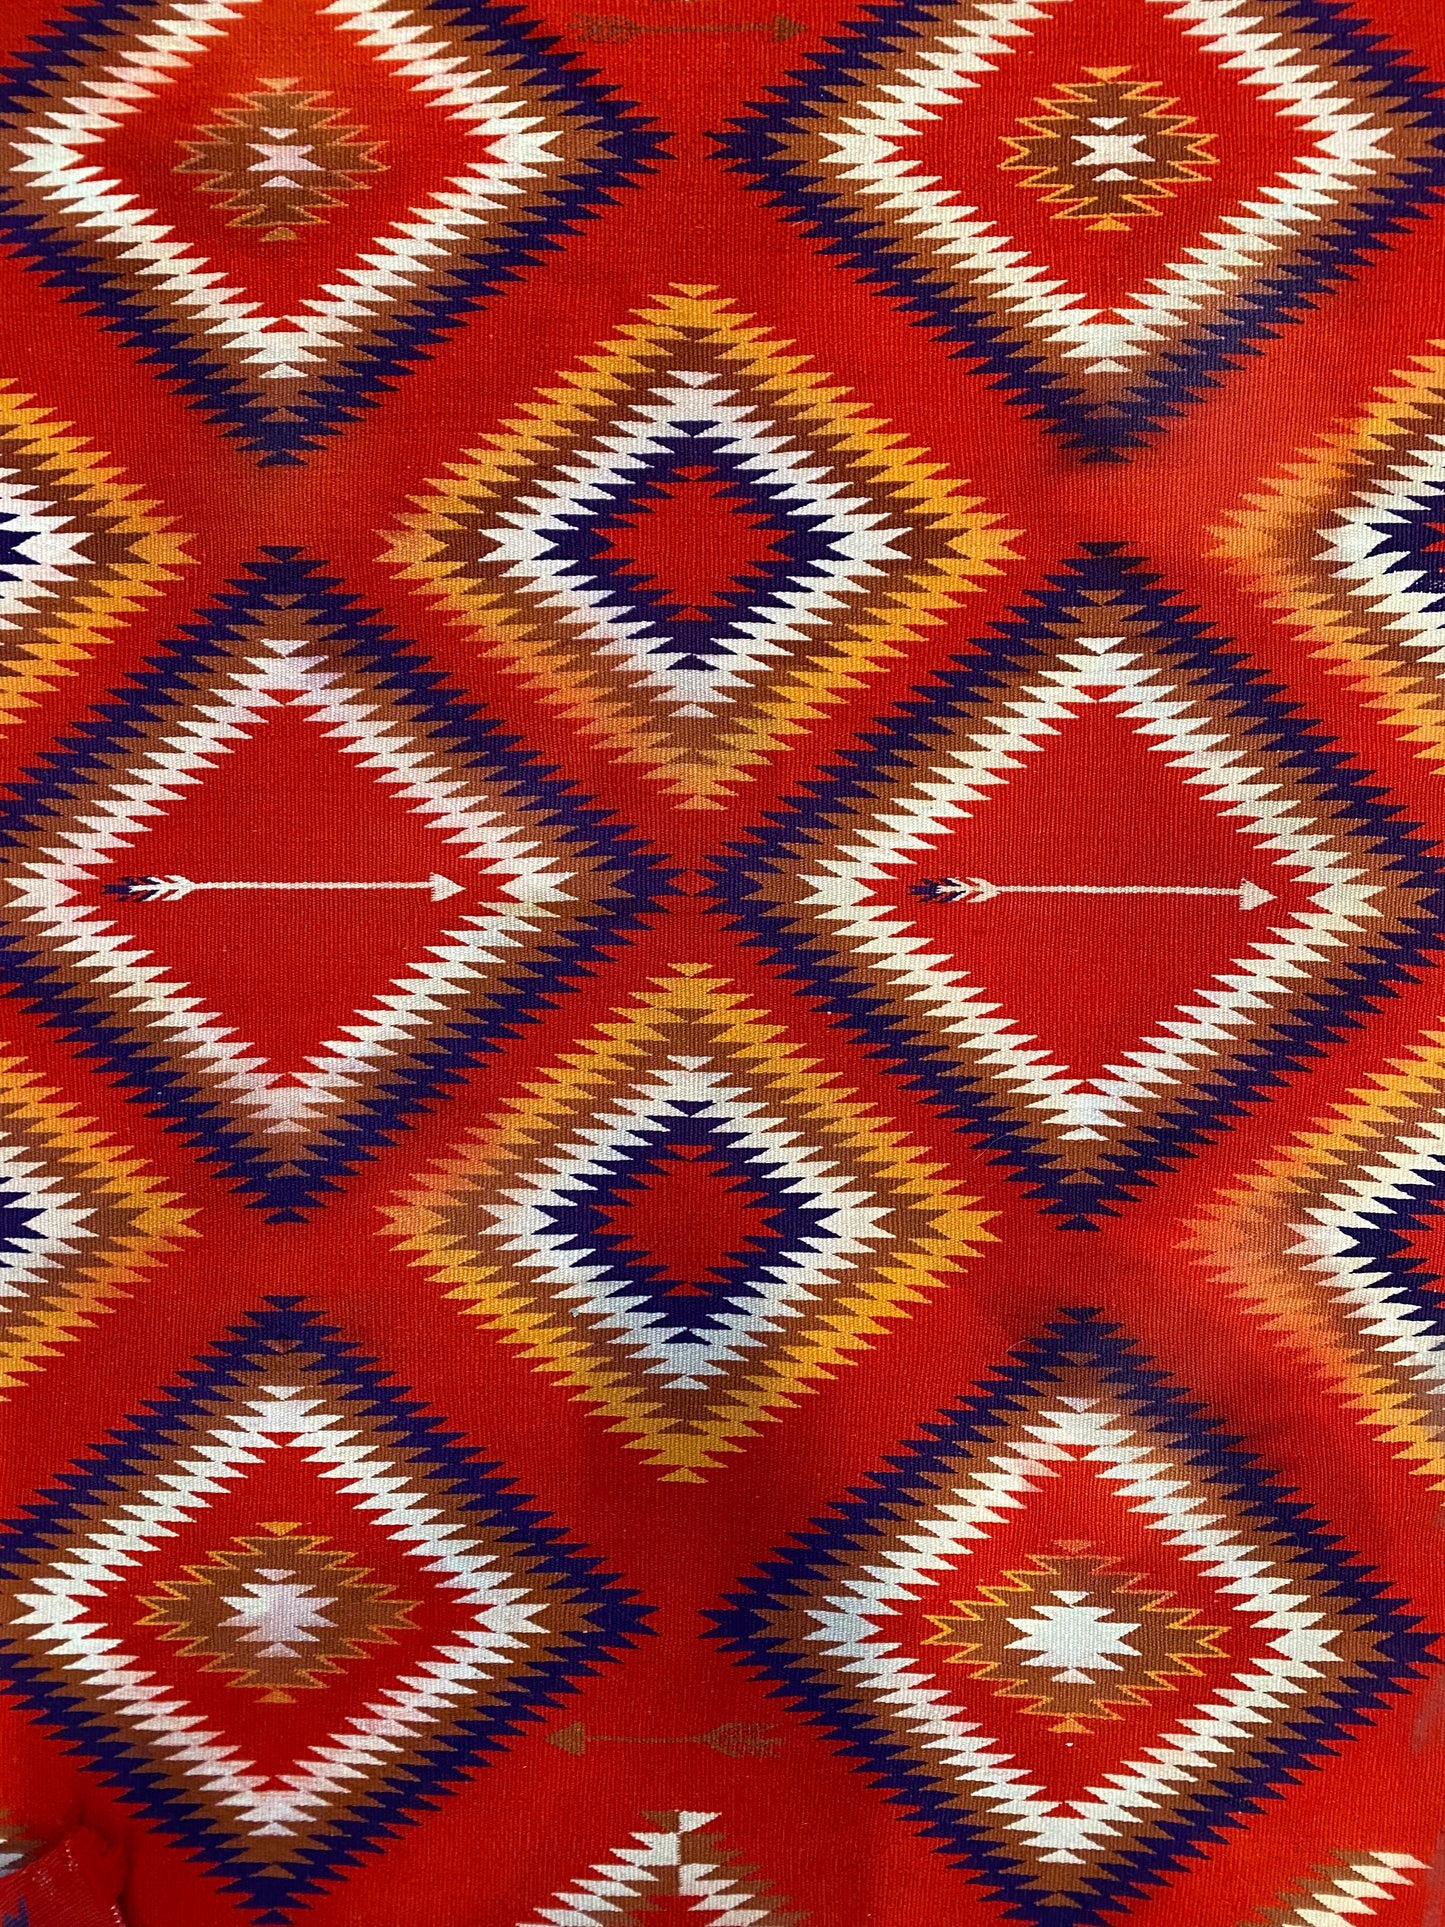 Antique Navajo Germantown Eye Dazzler Weaving, navajo rug for sale, authentic navajo weaving, telluride furnishings, telluride art gallery